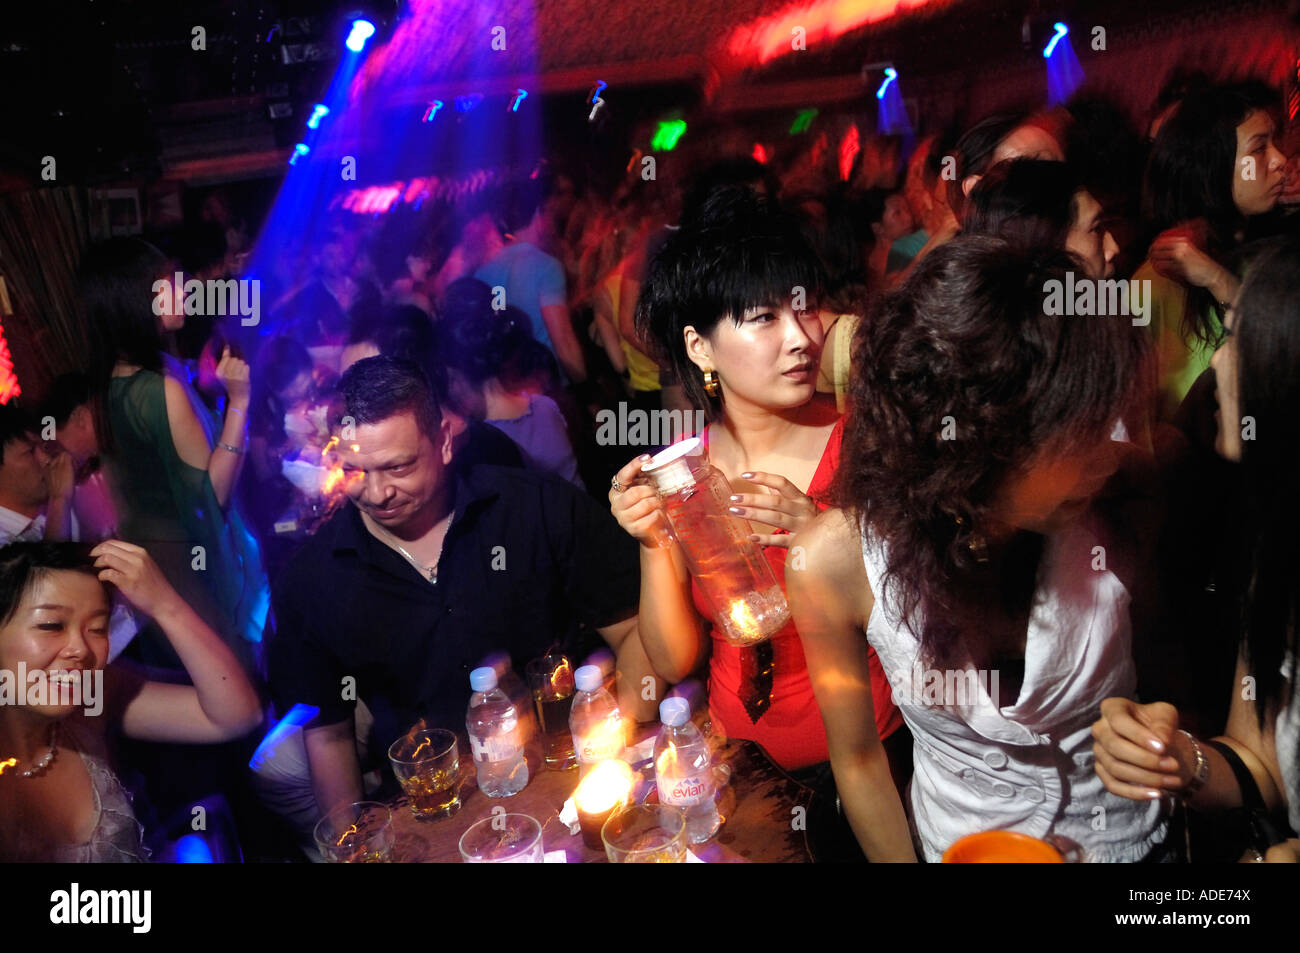 Personnes dans une boîte de nuit (Le Monde de Suzie Wong Club) à Pékin, en Chine. 28 juil 2007 Banque D'Images